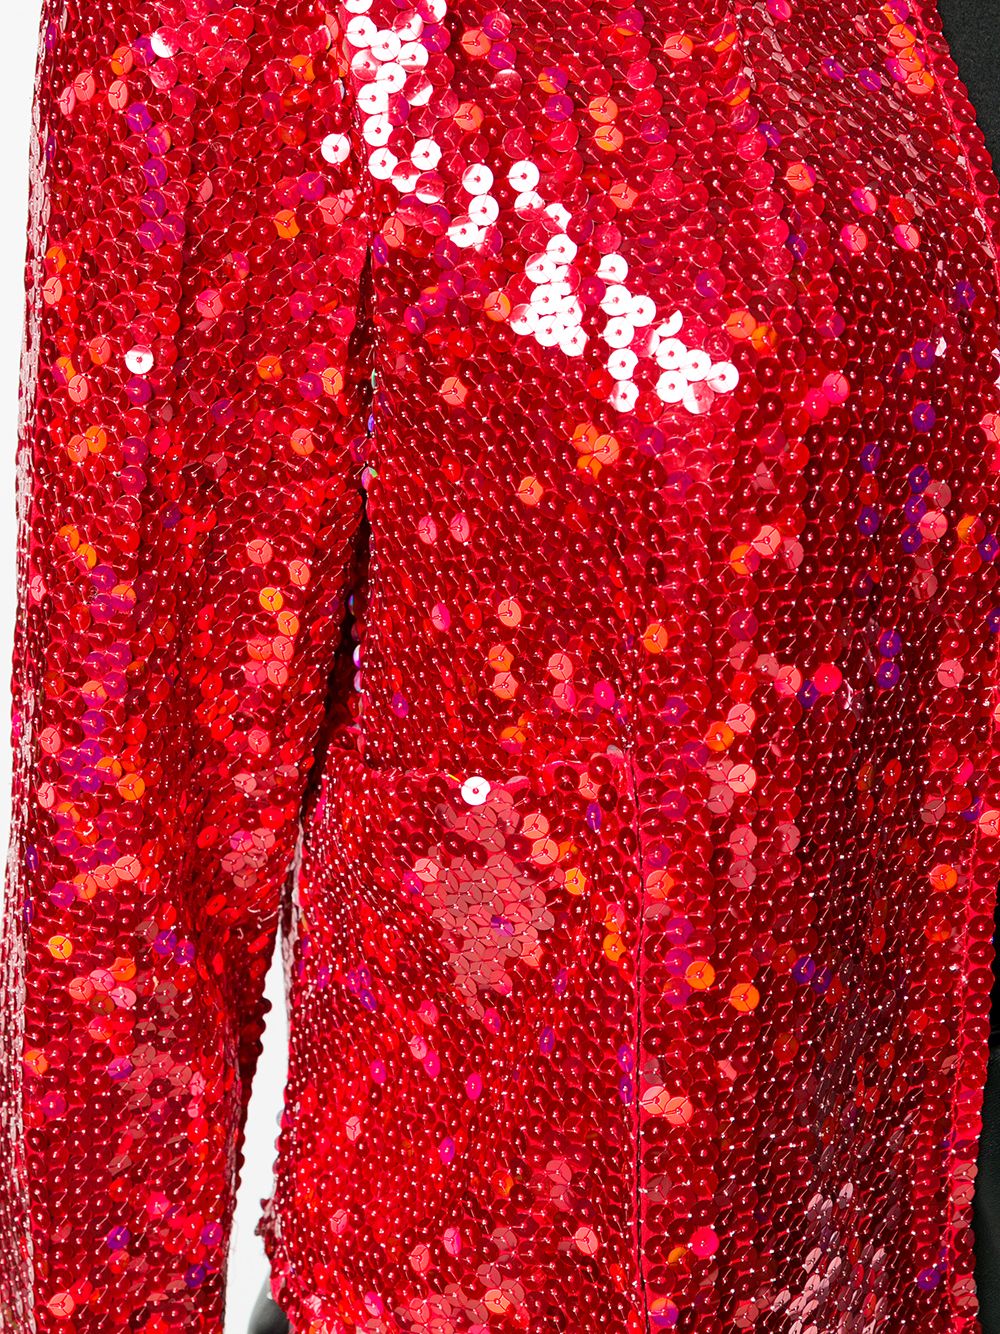 Pre-owned Comme Des Garçons 1999 Sequin Embellished Cropped Jacket In Red